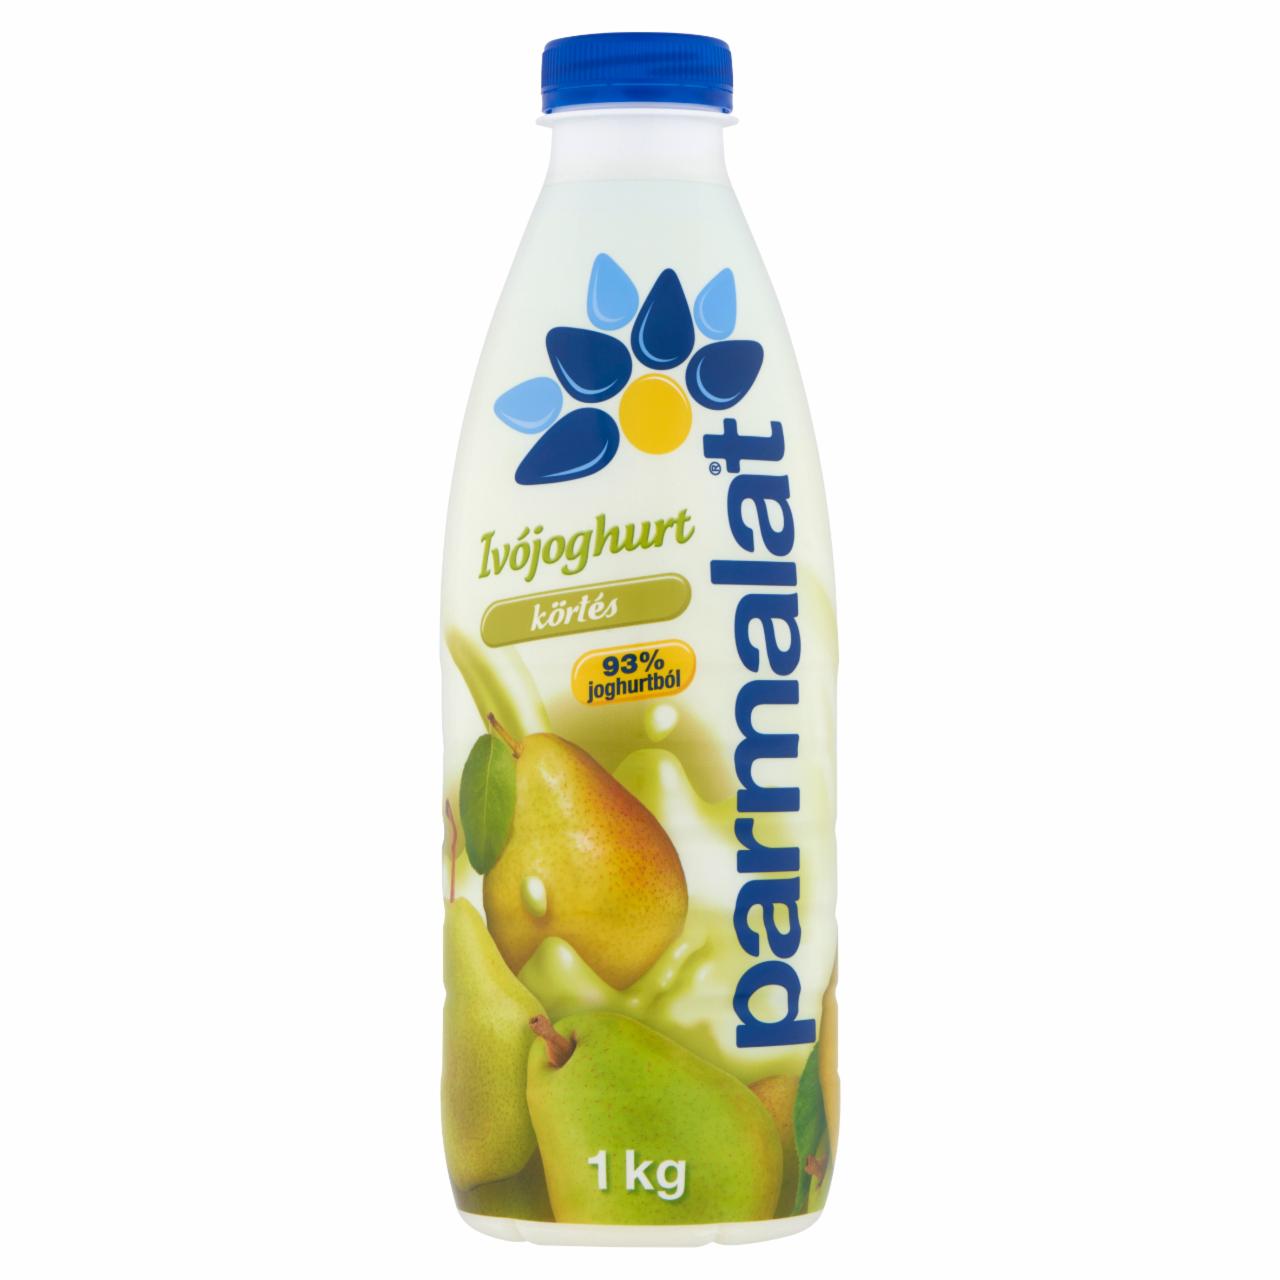 Képek - Parmalat zsírszegény körtés ivójoghurt 1 kg